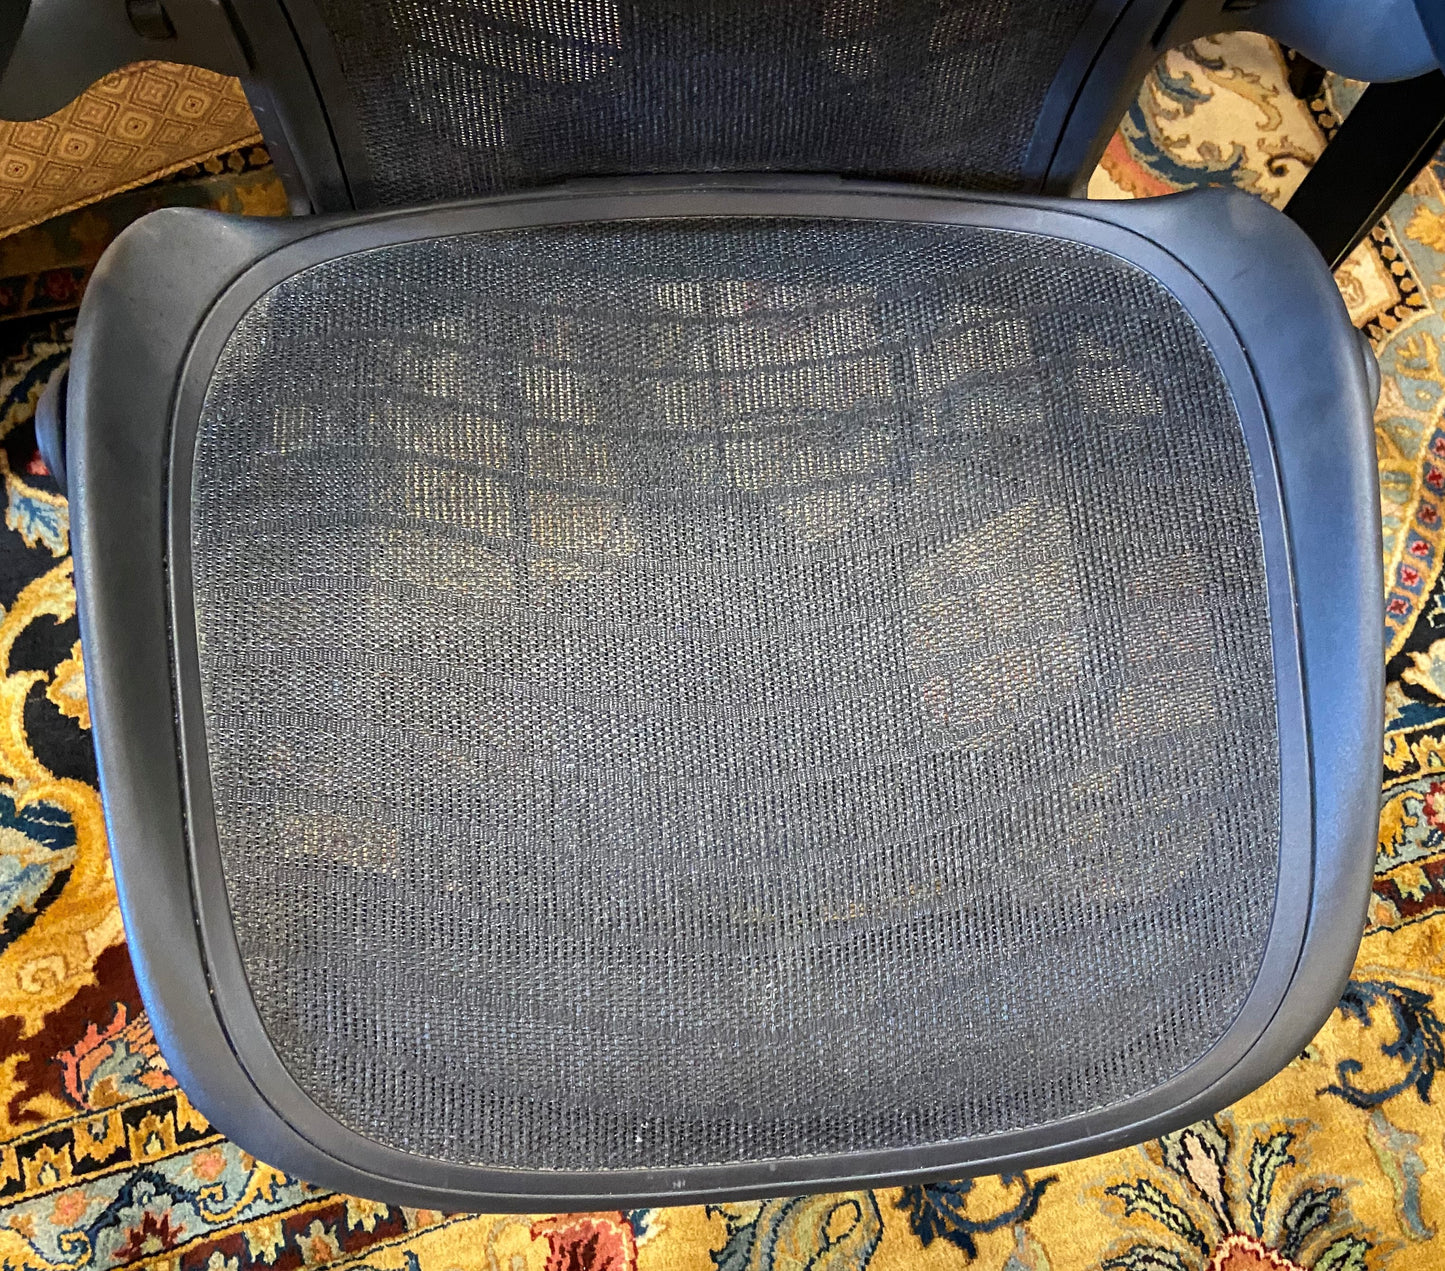 Herman Miller Aeron Chair Large